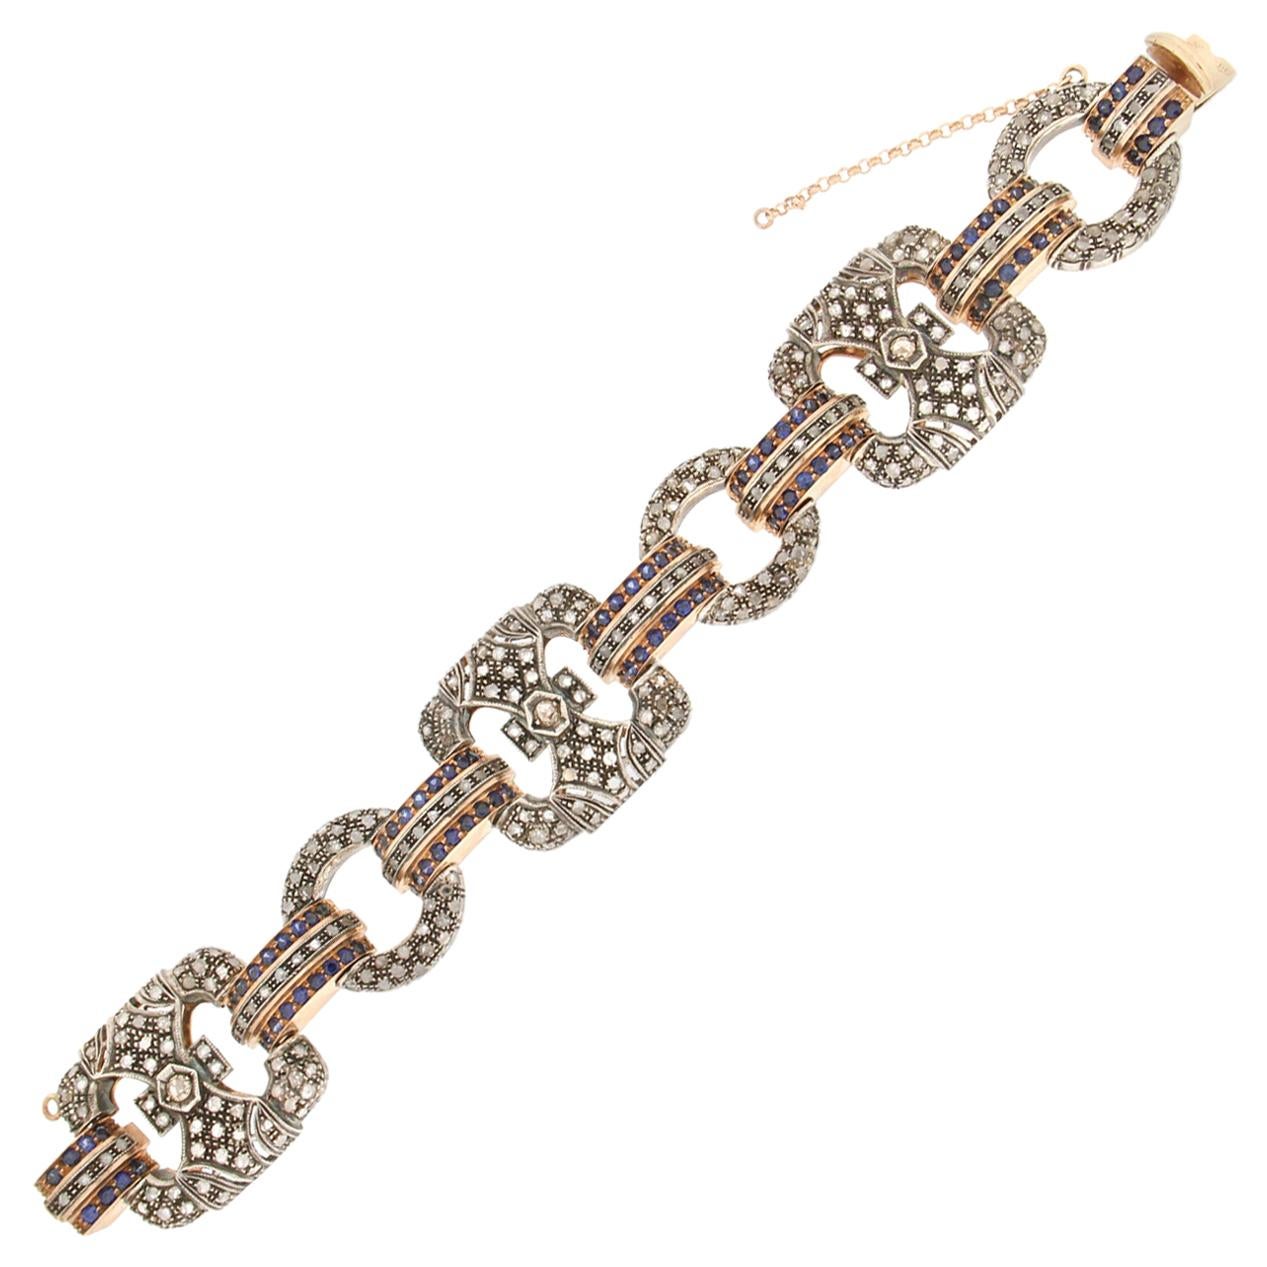 Handgefertigtes Manschettenarmband mit Saphiren 14 Karat Gelbgold Diamanten